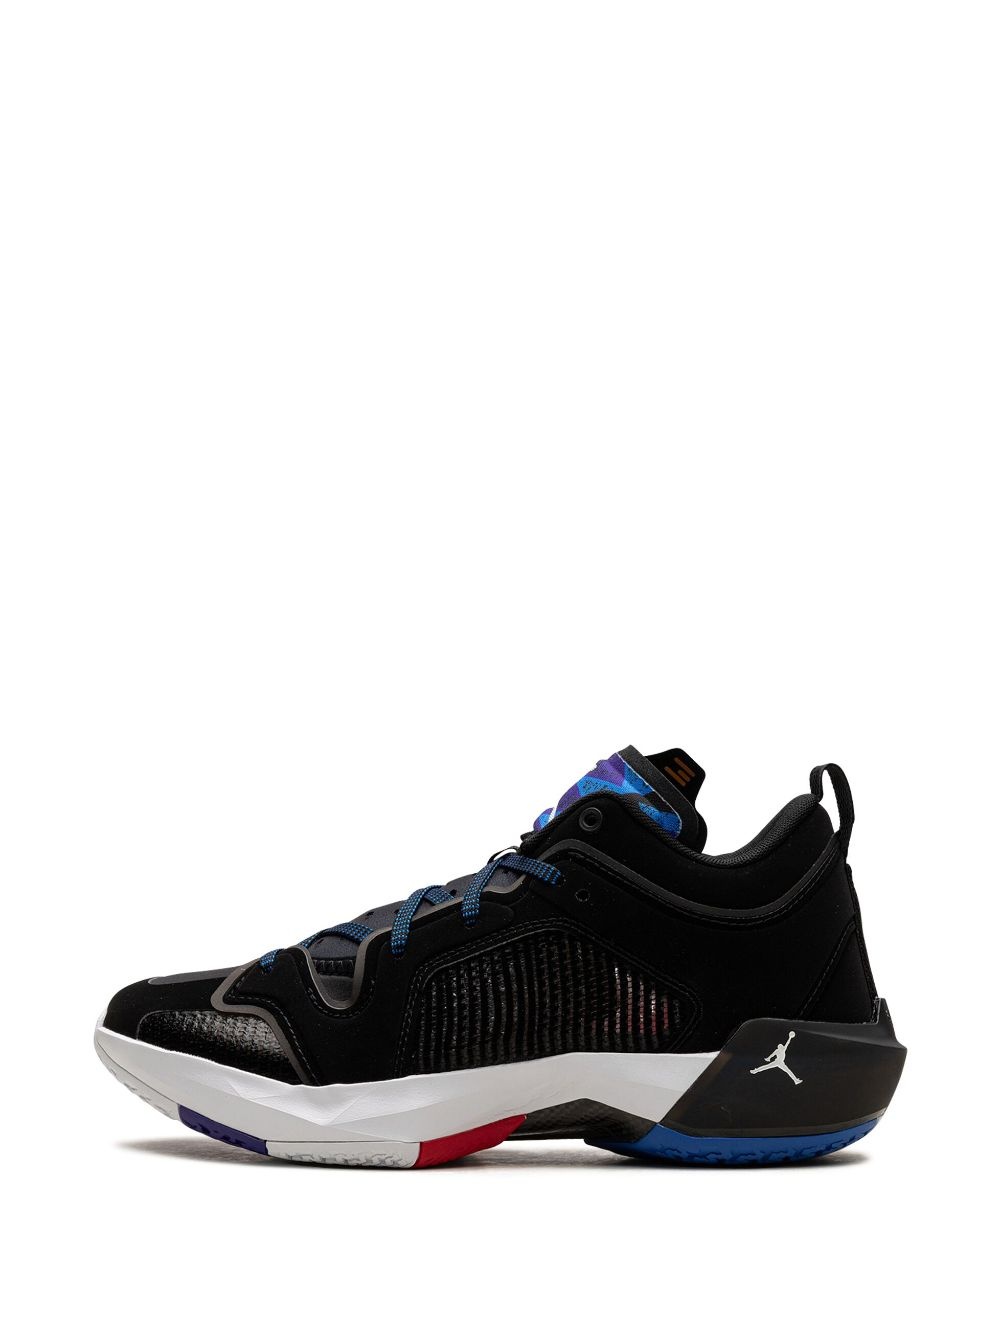 Air Jordan XXXVII "Nothing But Net" sneakers - 6